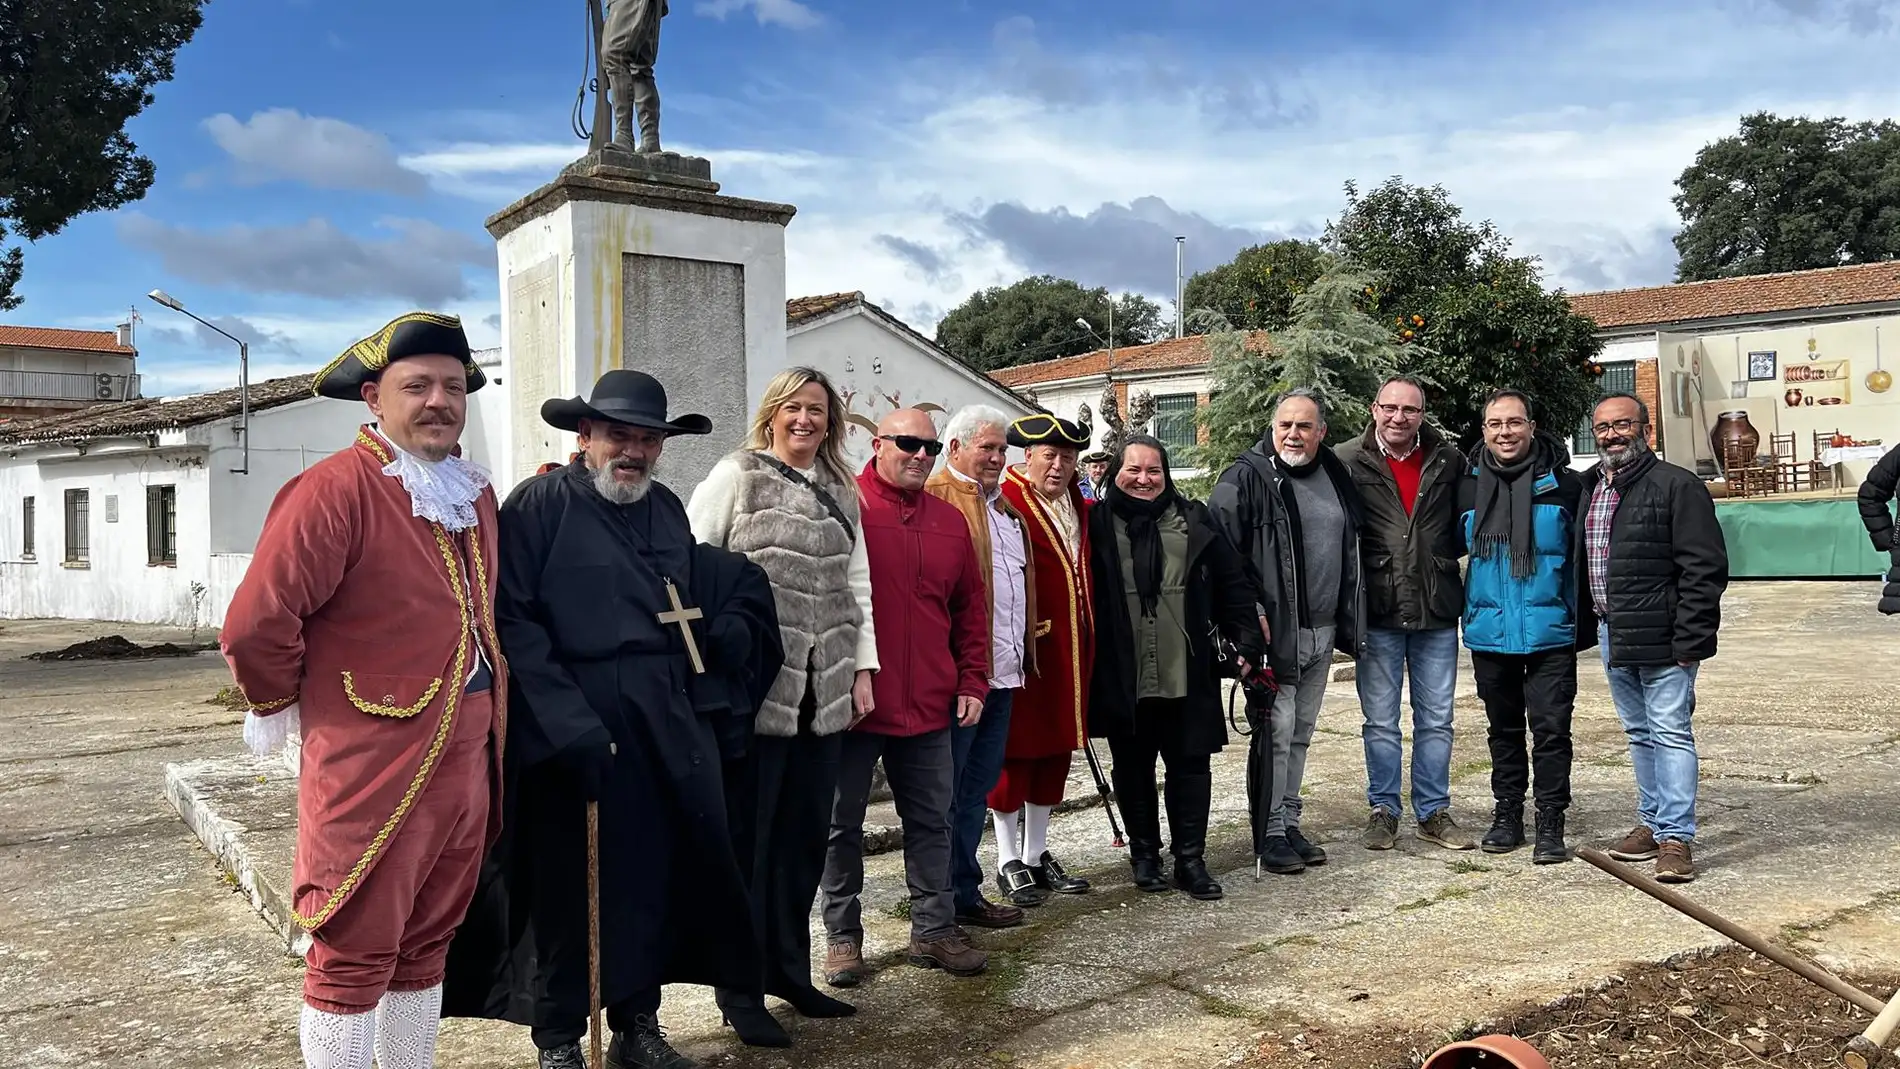 La Fiesta del Árbol de Villanueva de la Sierra, la "más antigua del mundo", quiere ser de Interés Turístico Regional